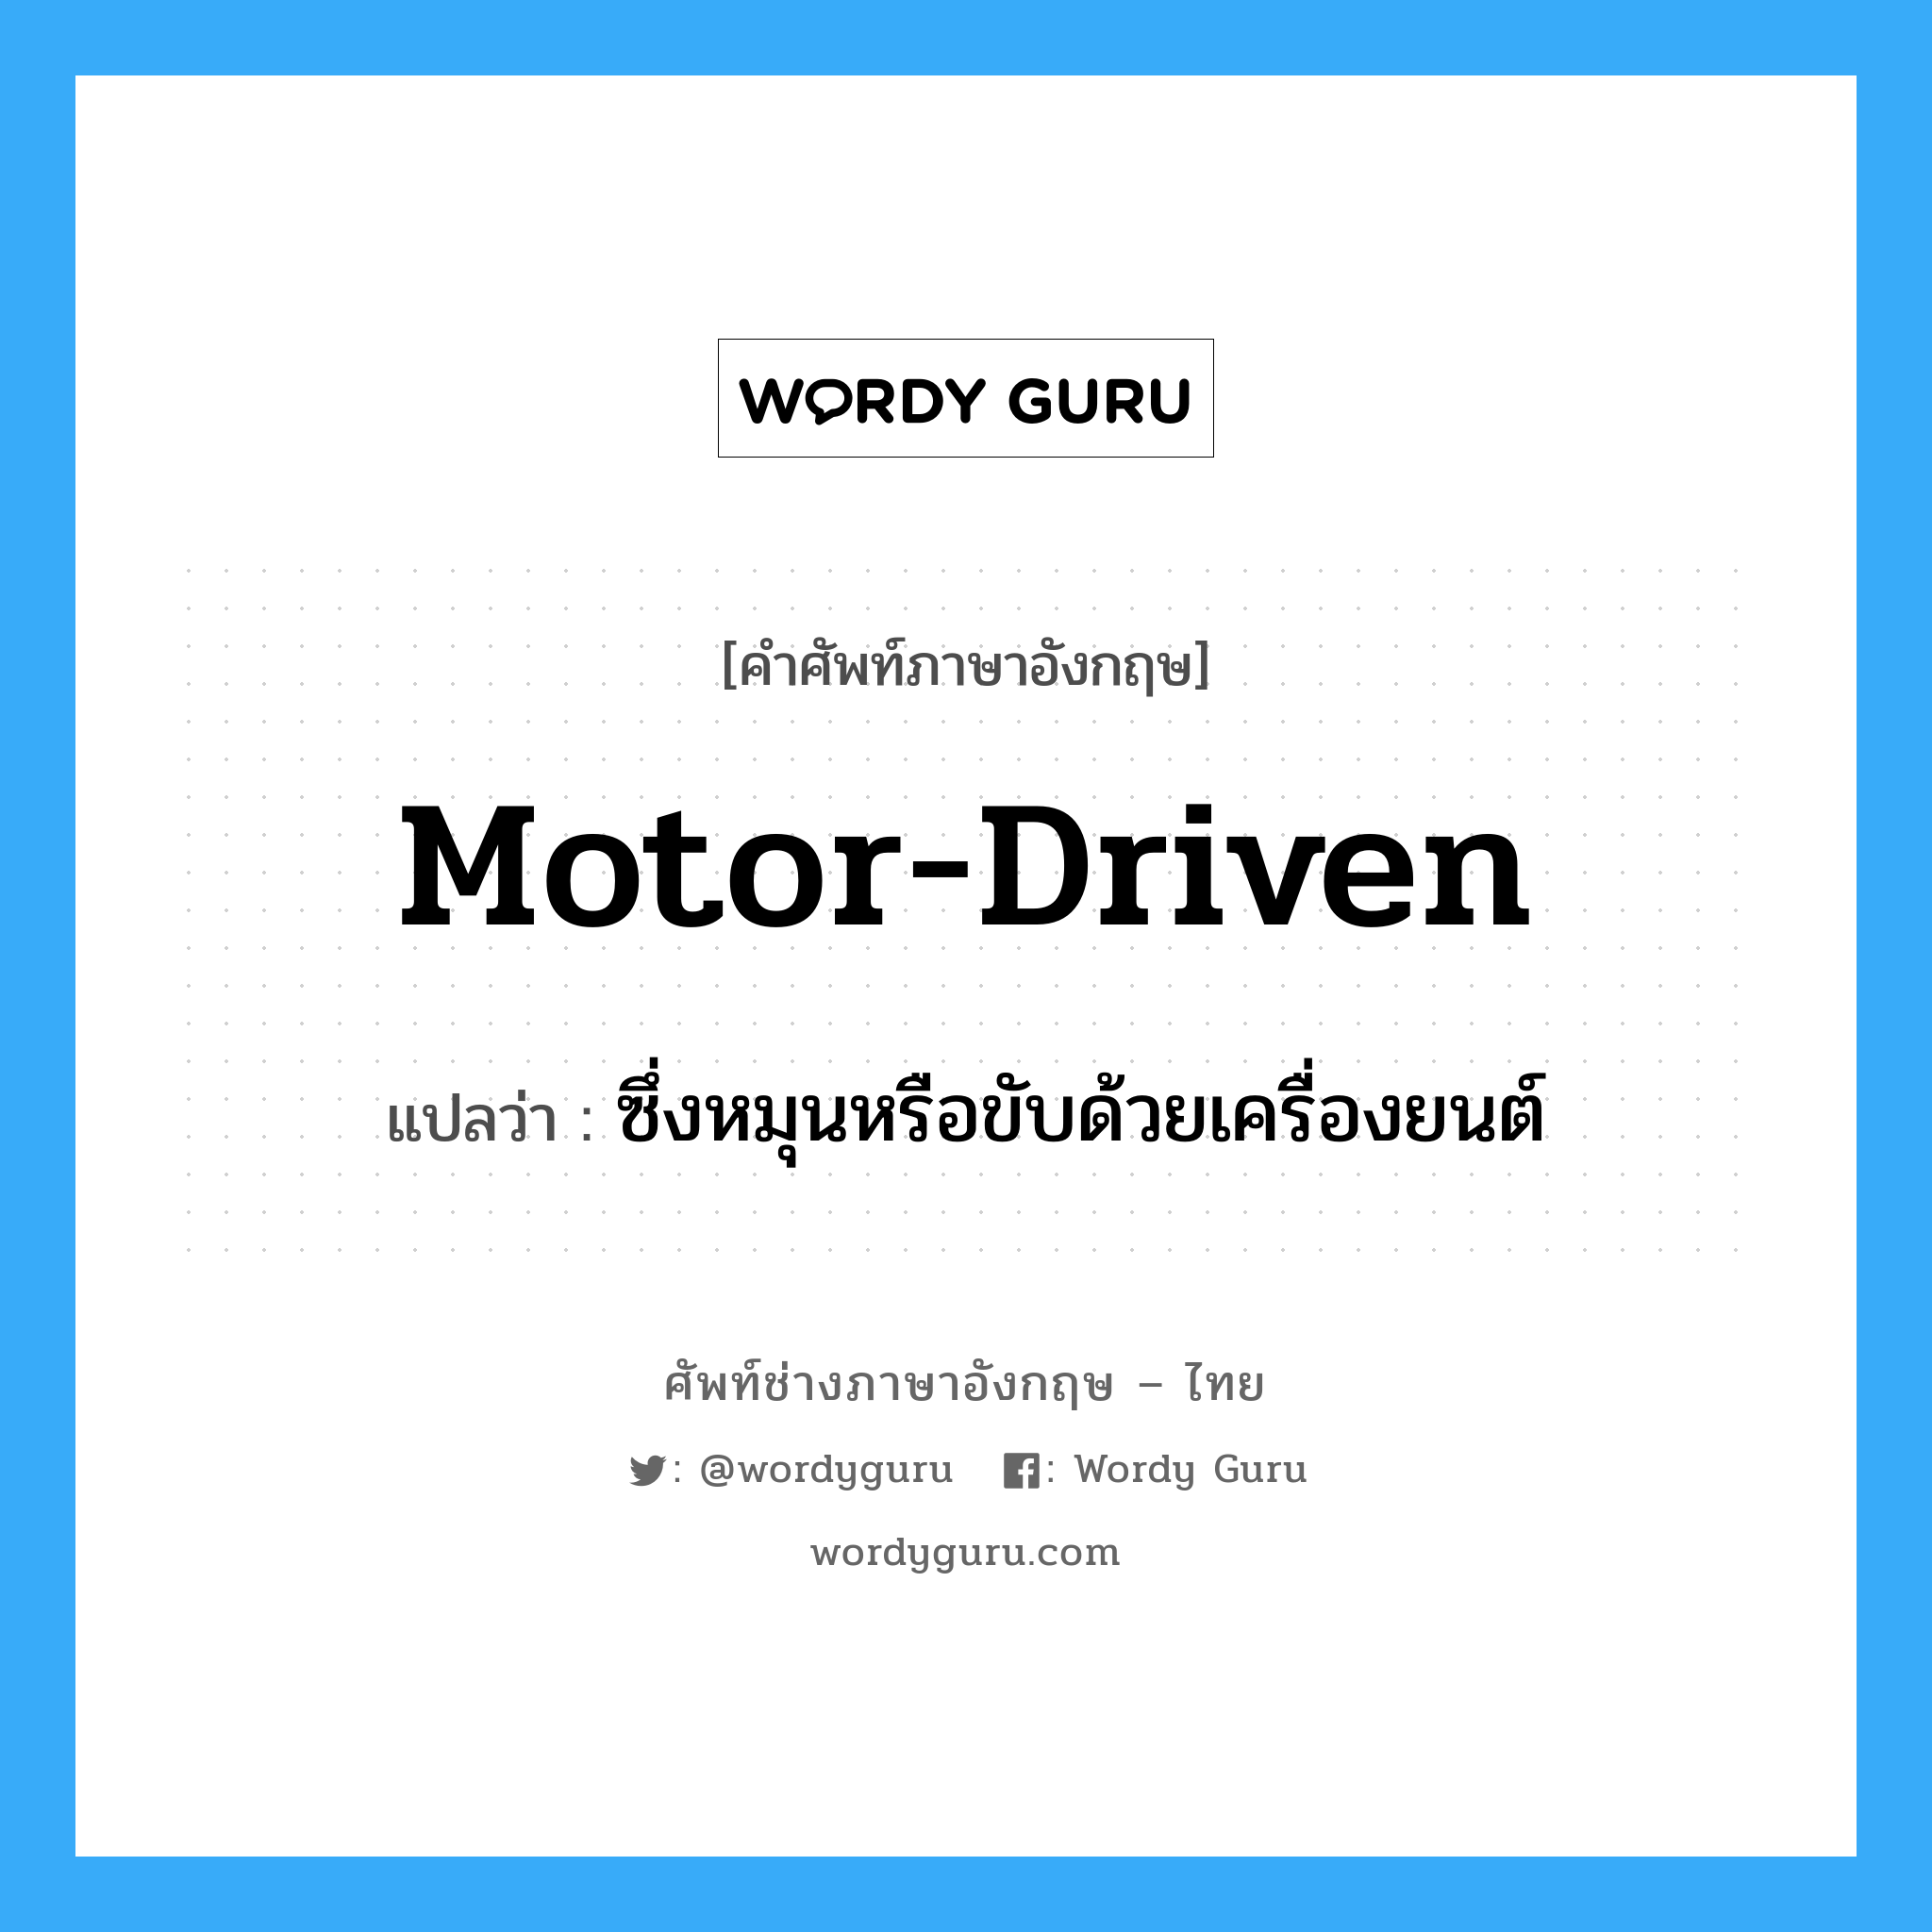 motor-driven แปลว่า?, คำศัพท์ช่างภาษาอังกฤษ - ไทย motor-driven คำศัพท์ภาษาอังกฤษ motor-driven แปลว่า ซึ่งหมุนหรือขับด้วยเครื่องยนต์